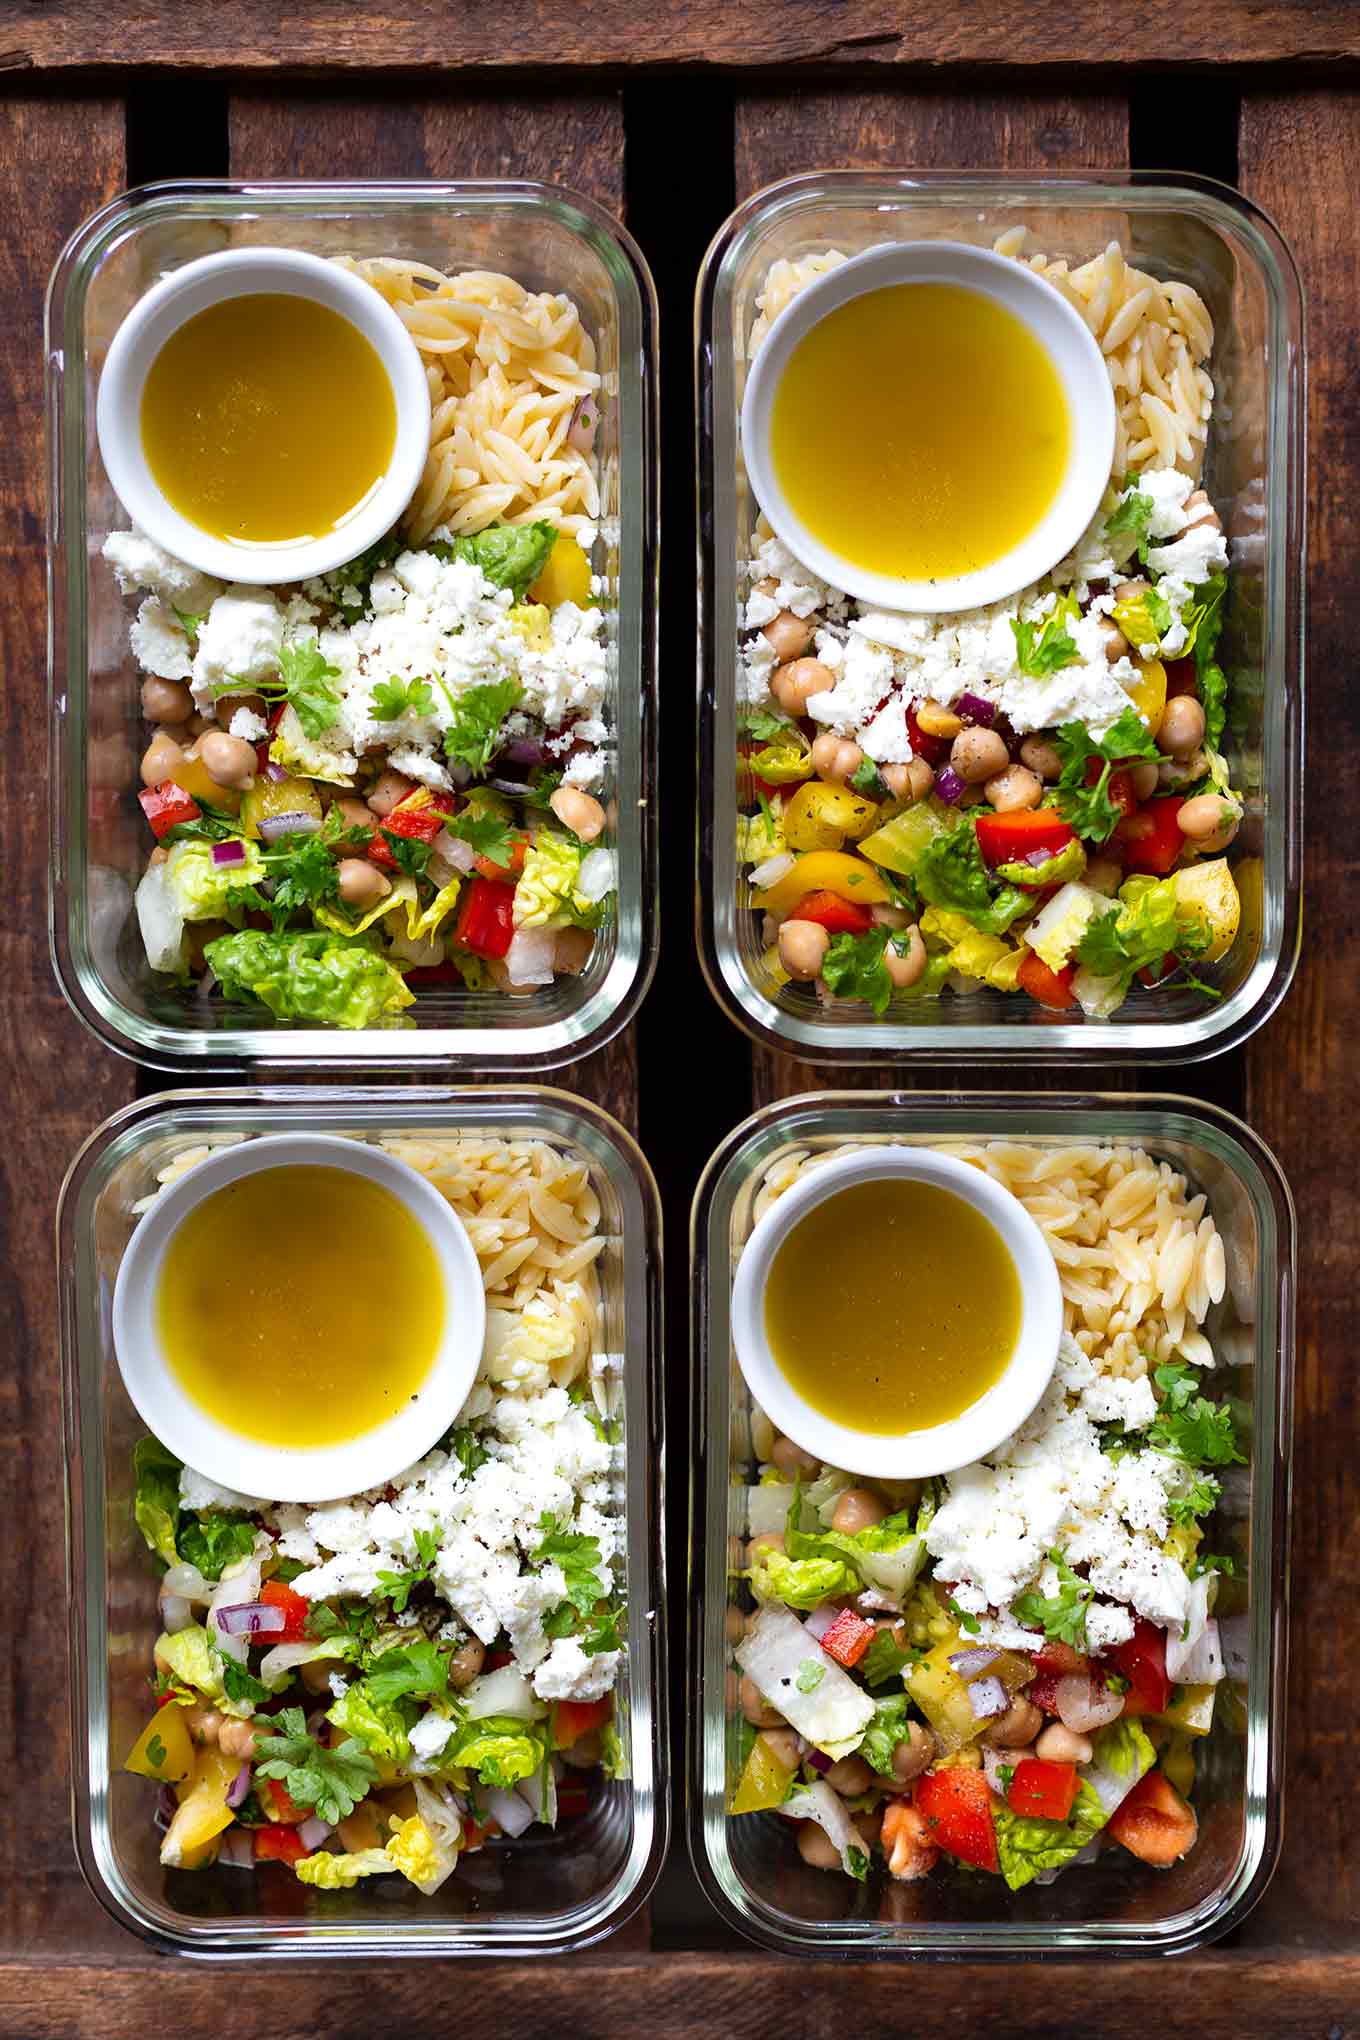 11 schnelle und einfache Meal Prep Rezepte. Einfacher Orzo-Meal Prep-Salat mit Feta, so gut! - Kochkarussell Foodblog #mealprep #mealpreprezepte #salat